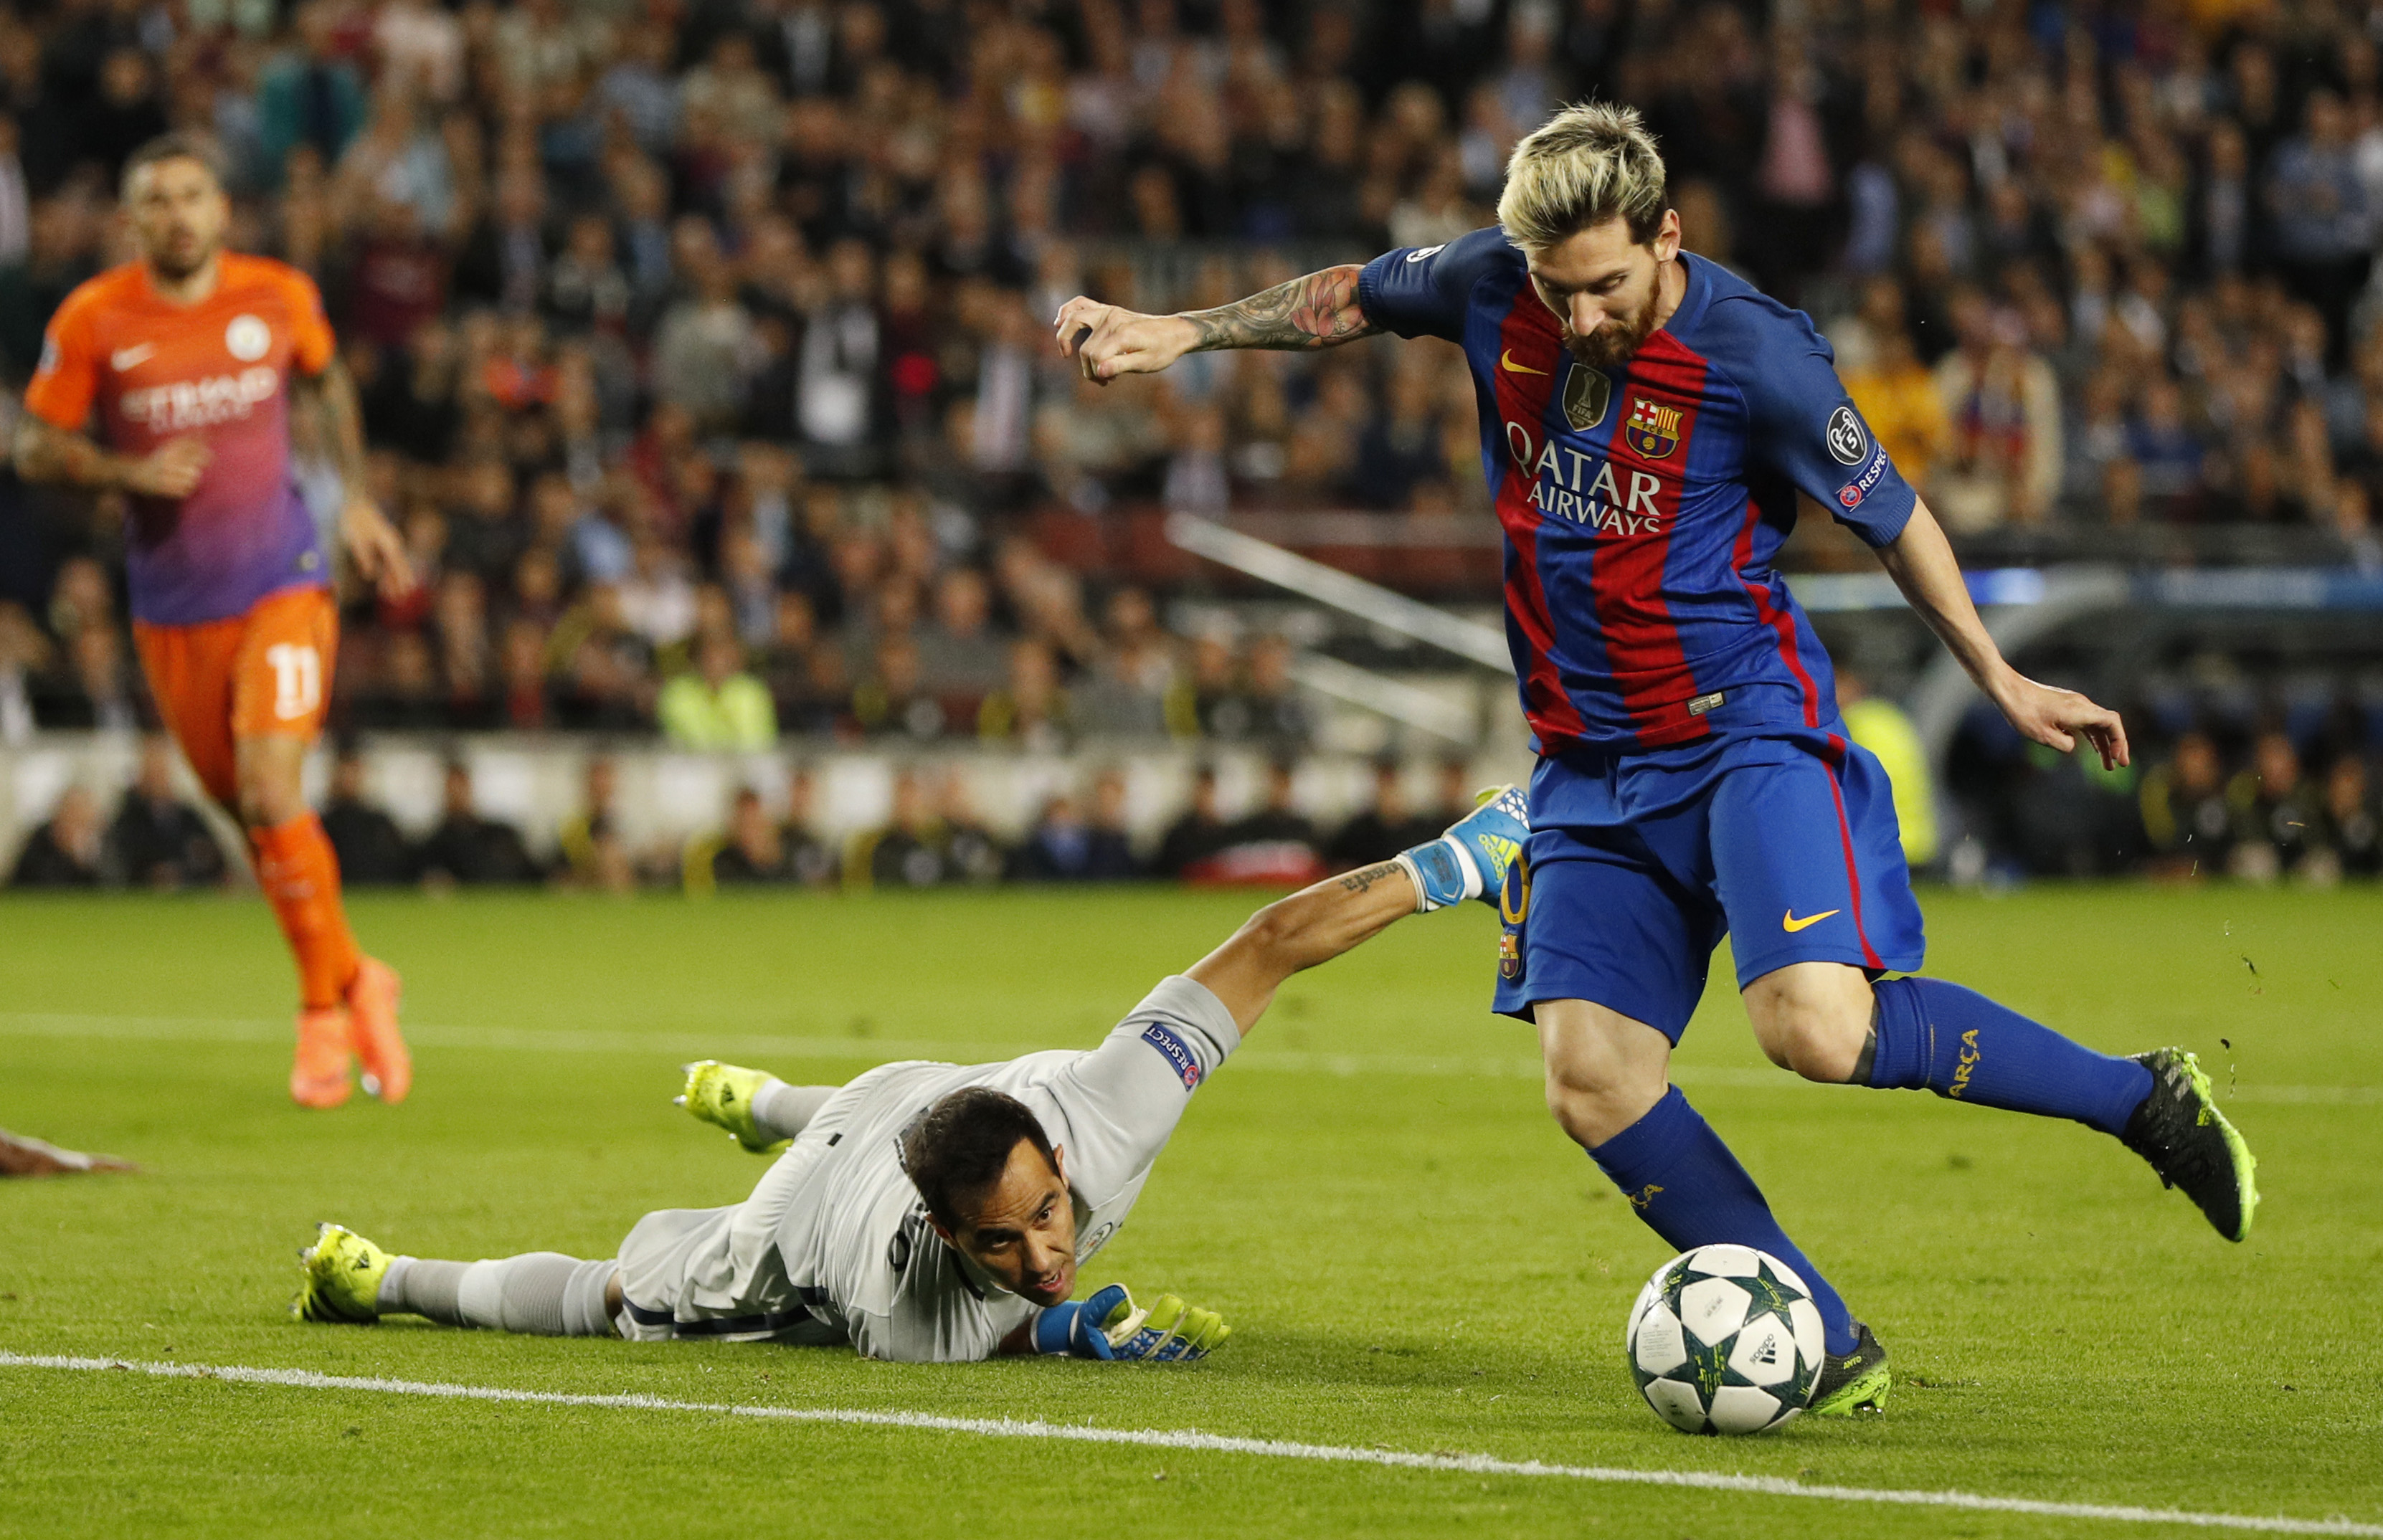 Man City chắc chắn là đối thủ cạnh tranh khó chịu của Barca và Messi những ngày này. Tuy nhiên, bức ảnh hung thần Messi này vẫn khiến fan hâm mộ phải thán phục trước sức mạnh và sự bùng nổ của anh chàng, khiến đối thủ phải sợ hãi.